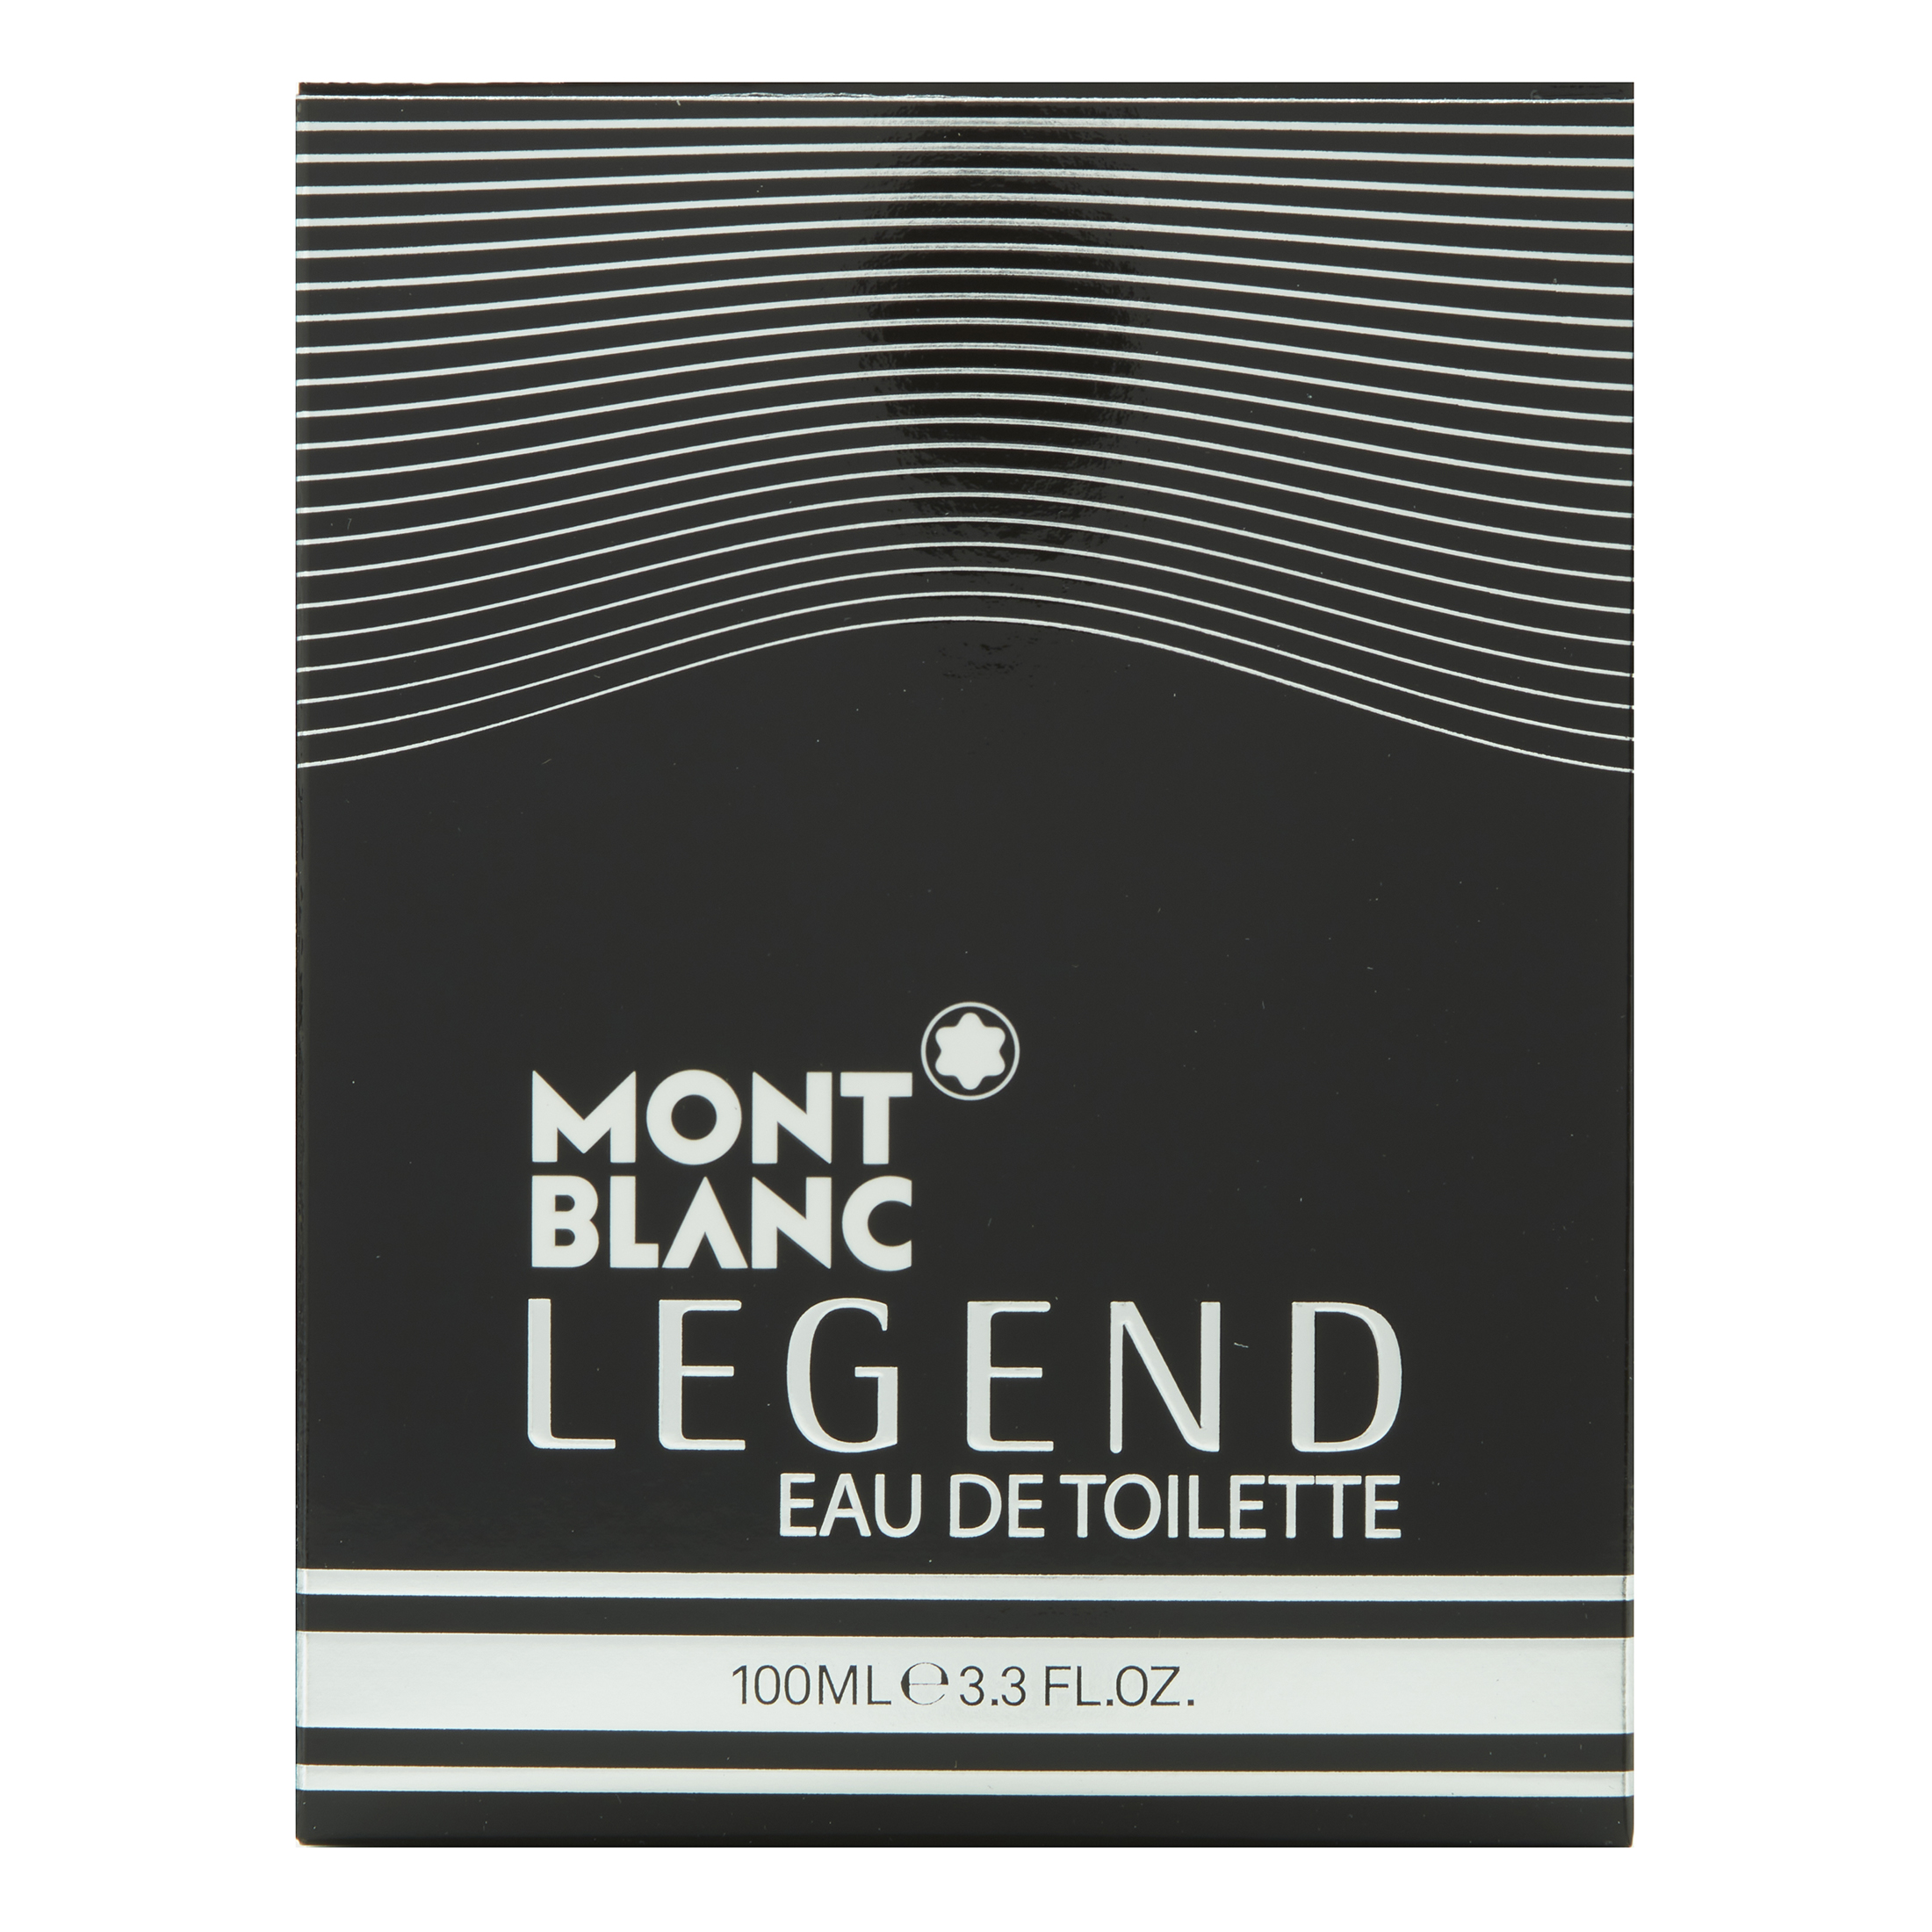 Montblanc Legend Eau de Toilette, Cologne for Men, 3.3 oz - image 2 of 3